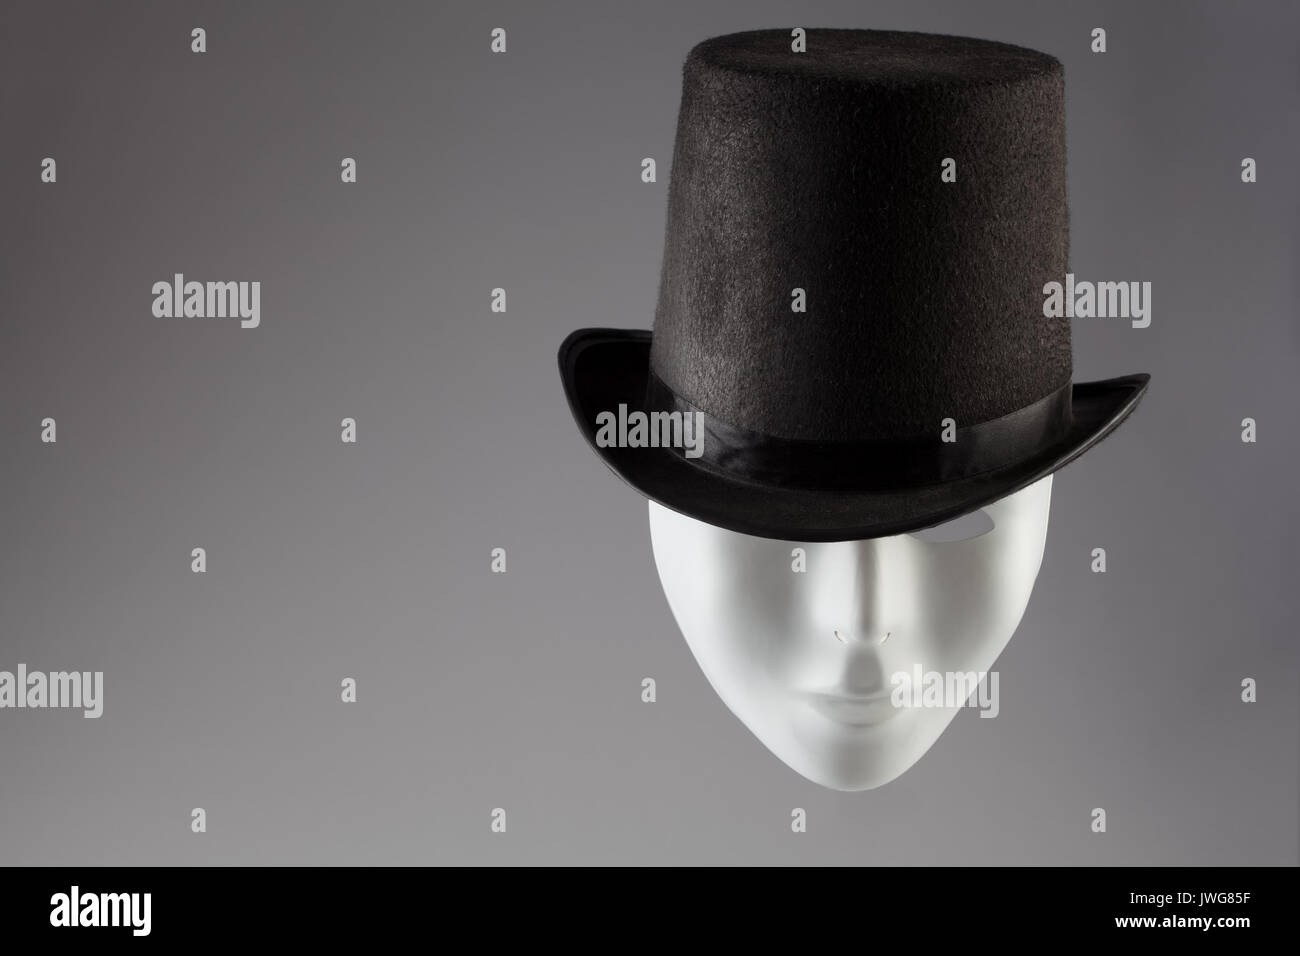 Masque blanc vêtu de noir sur fond gris top hat with copy space Banque D'Images